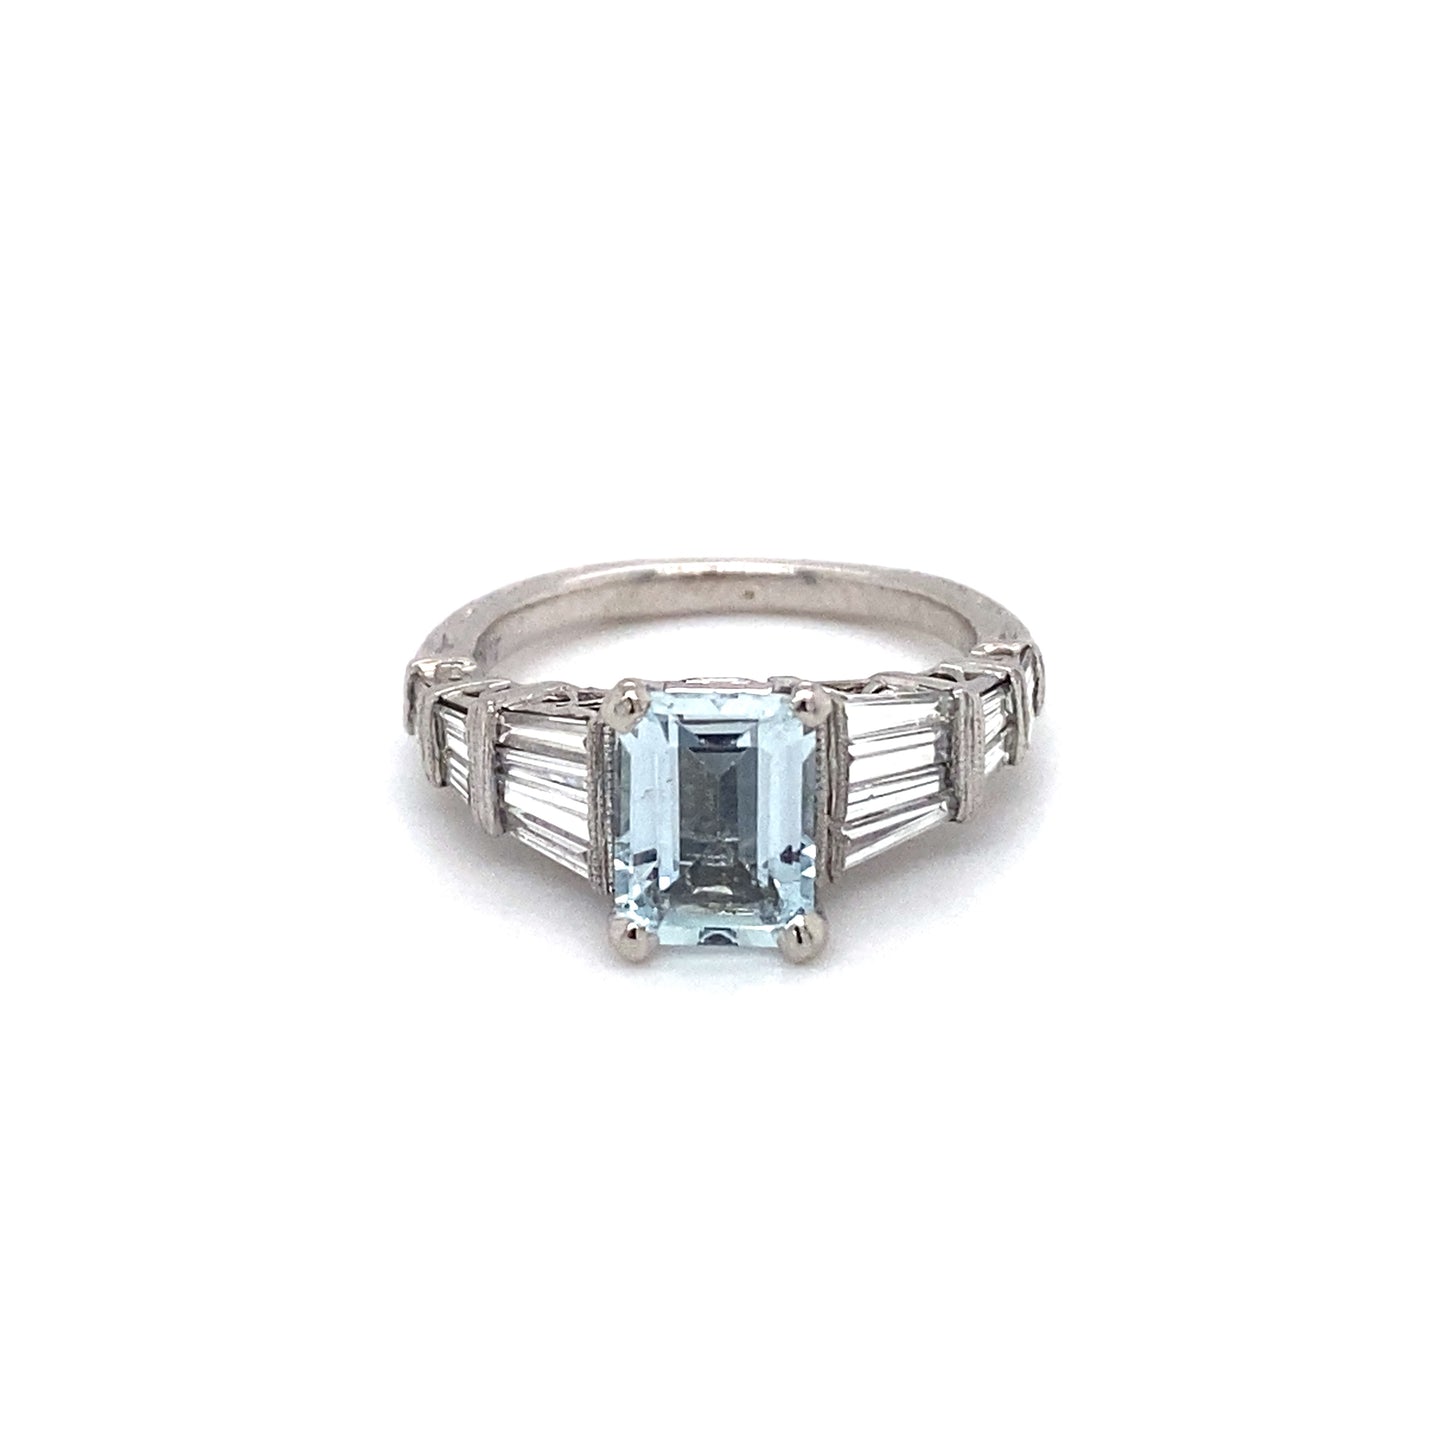 Circa 1980s 2.0 Carat Aquamarine and 1.17 Carat Diamond Ring in Platinum